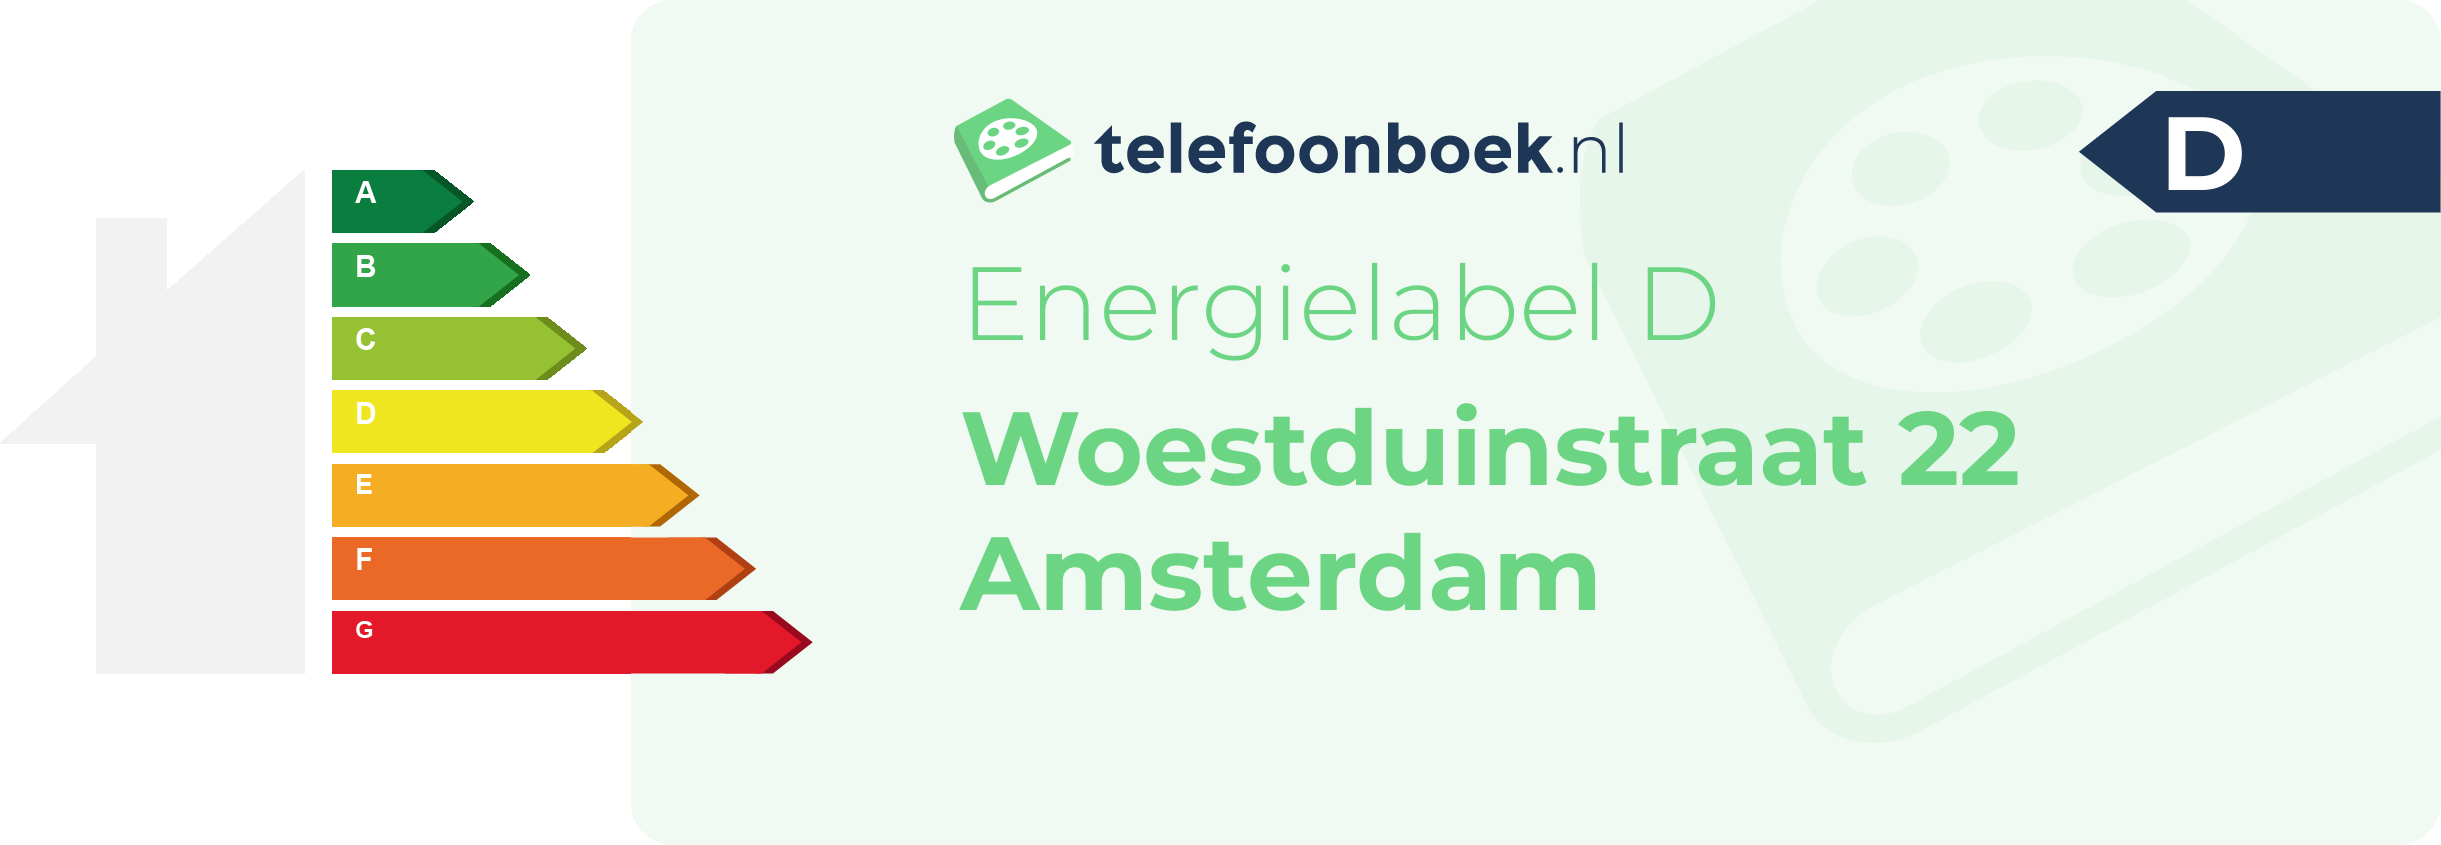 Energielabel Woestduinstraat 22 Amsterdam